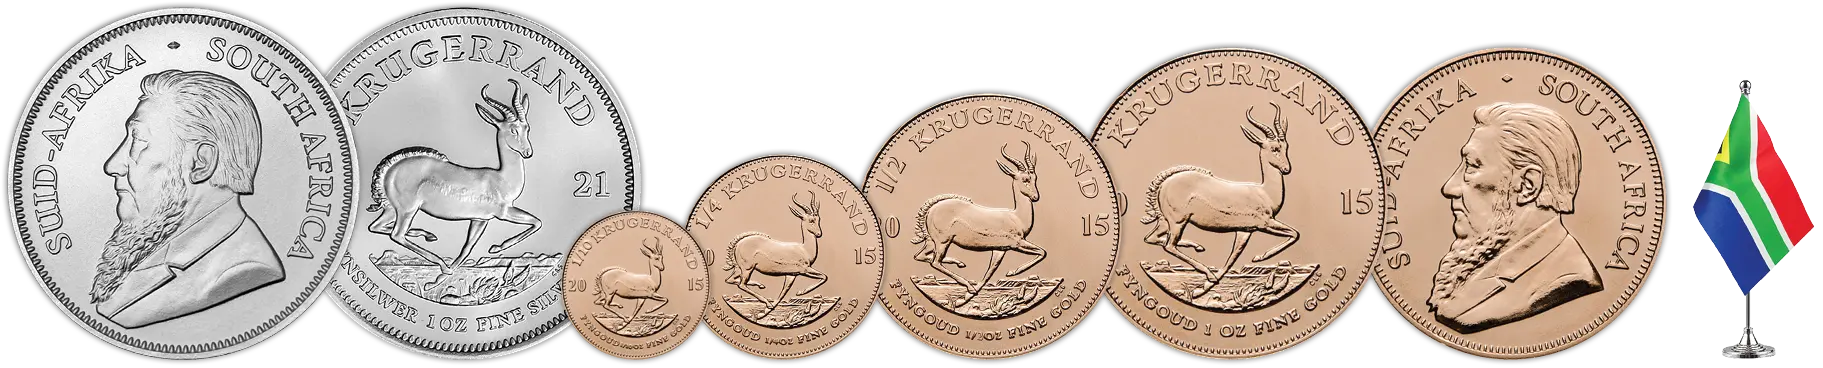 Dél-afrikai Krugerrand érmesor - 1 uncia ezüst érme, arany érme 1 unciától tized unciáig